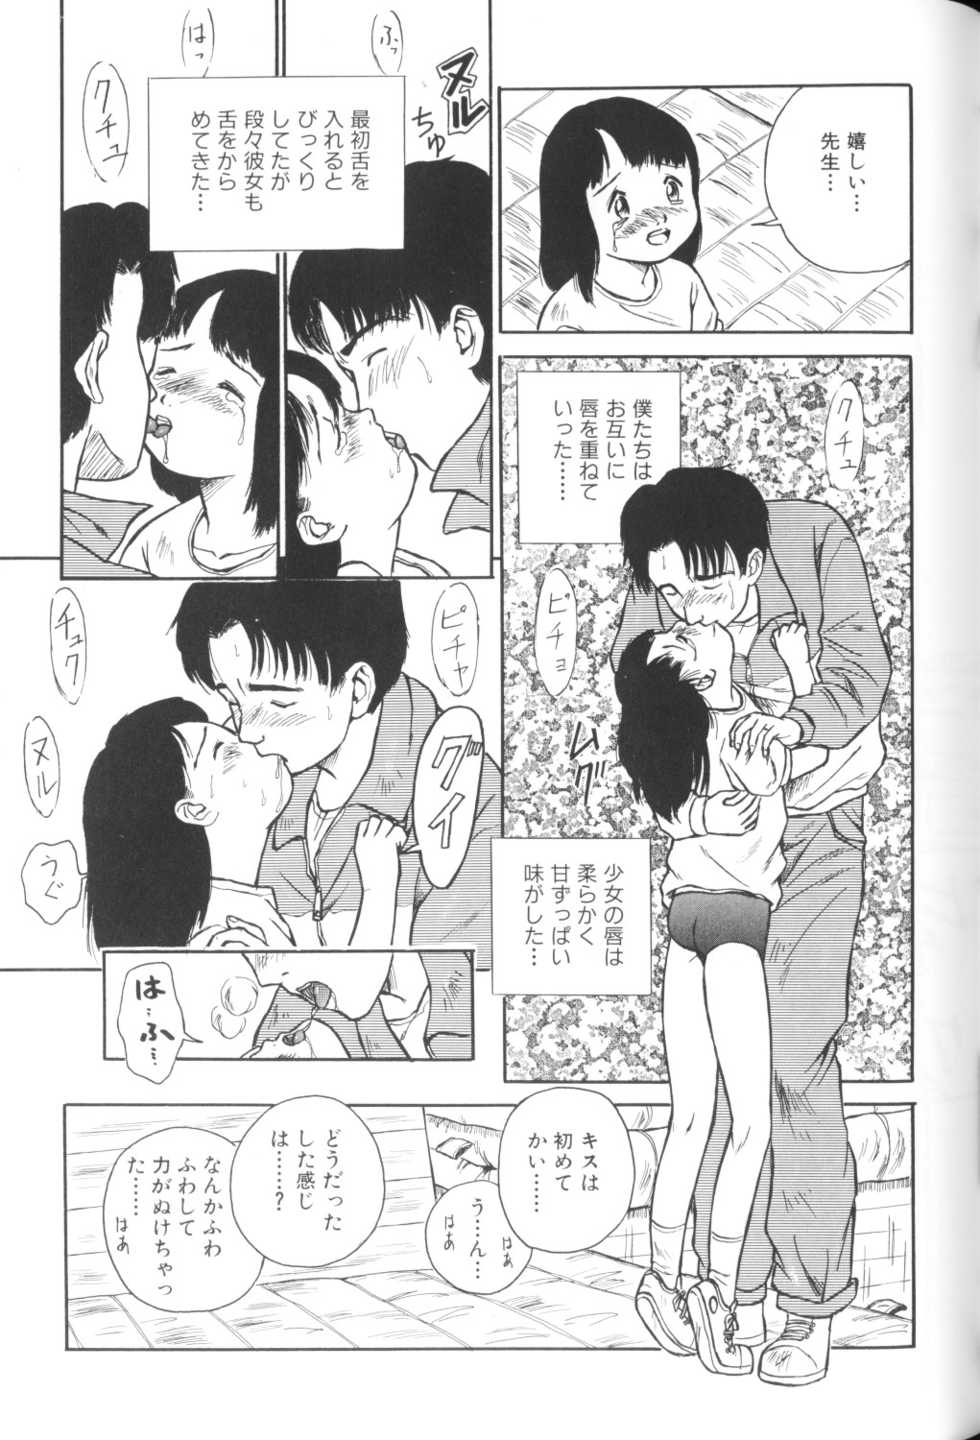 [Anthology] Yousei Nikki No. 1 - Page 21